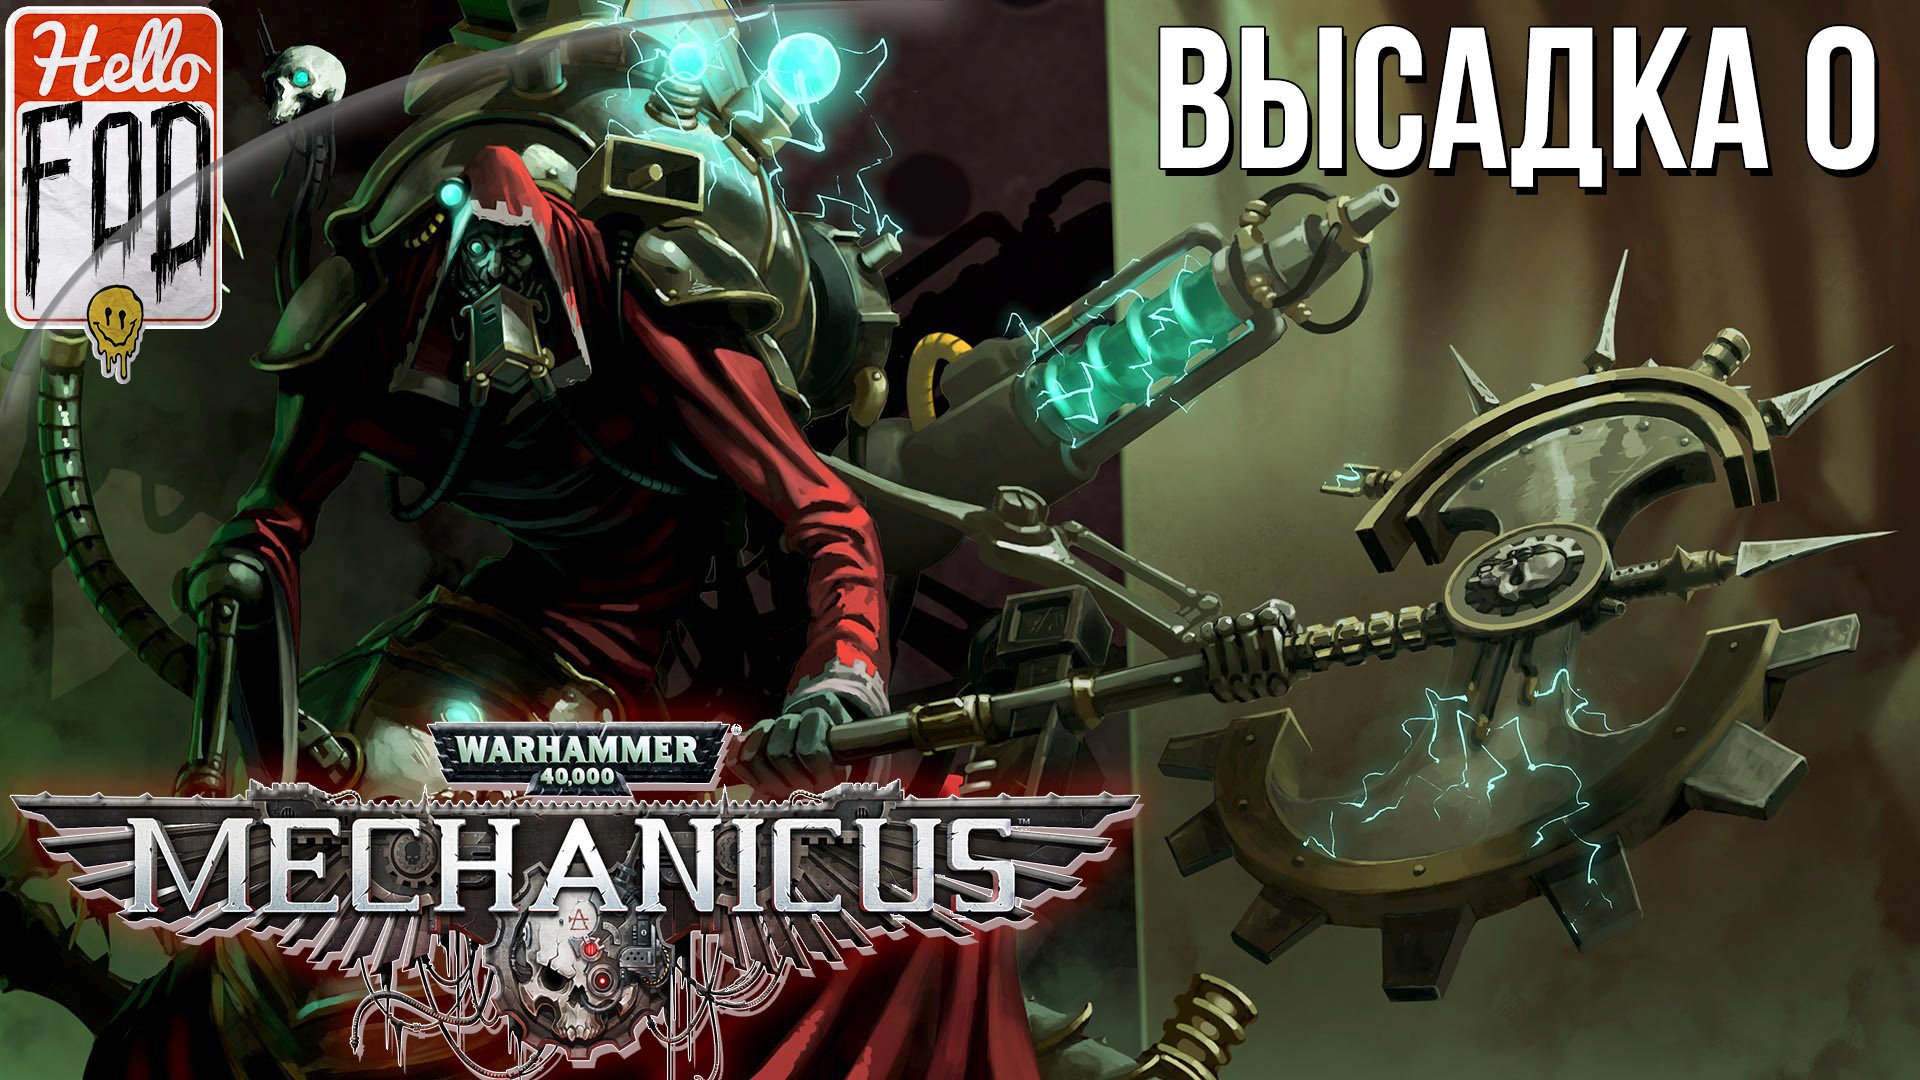 Warhammer 40.000 Mechanicus (Сложность: Очень сложно) ➤ Обучение ➤ Высадка 0.